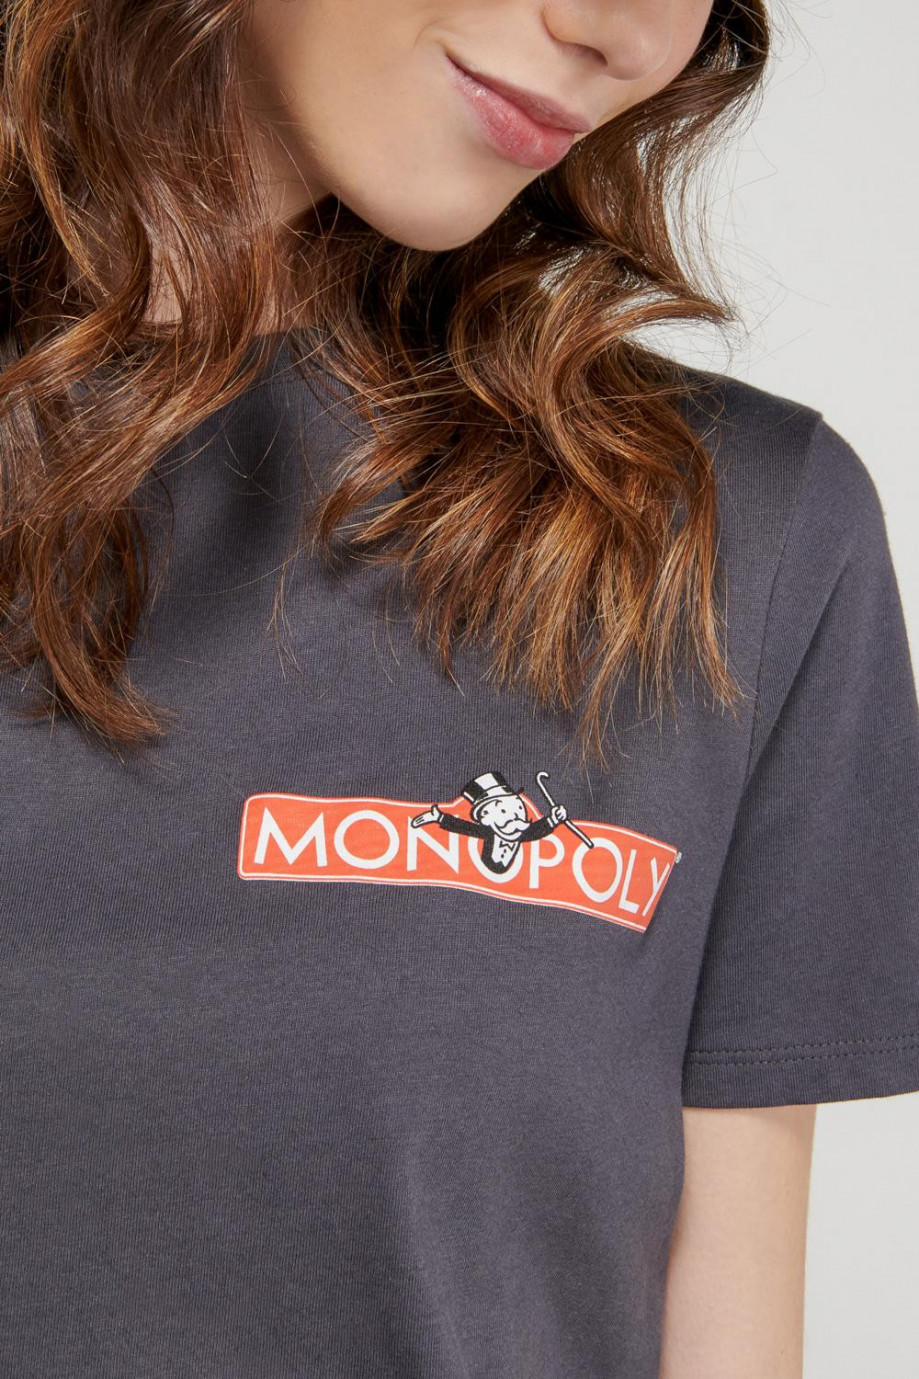 Camiseta manga corta gris intensa con estampado de Monopolio